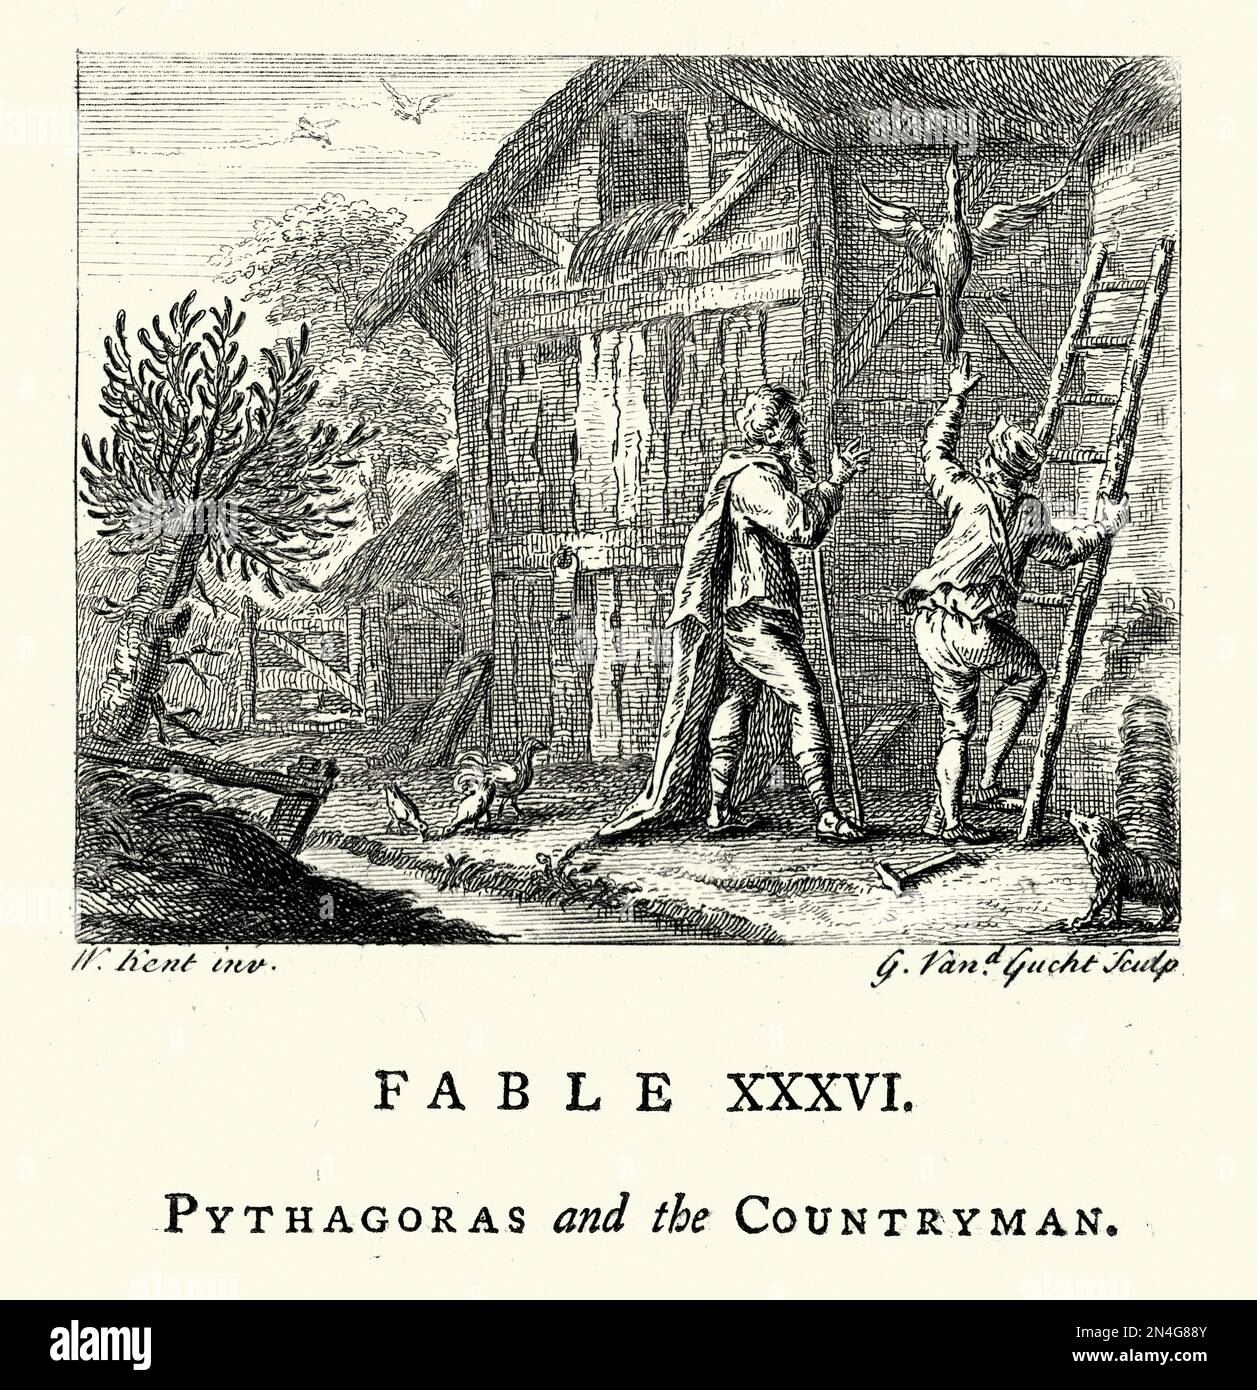 Klassische Gravur von Pythagoras und dem Landsmann aus den Fables von John Gay, 18. Jahrhundert. Pythagoras von Samos war ein alter Ionischer griechischer Philosoph und der gleichnamige Gründer des Pythagoreismus. Stockfoto